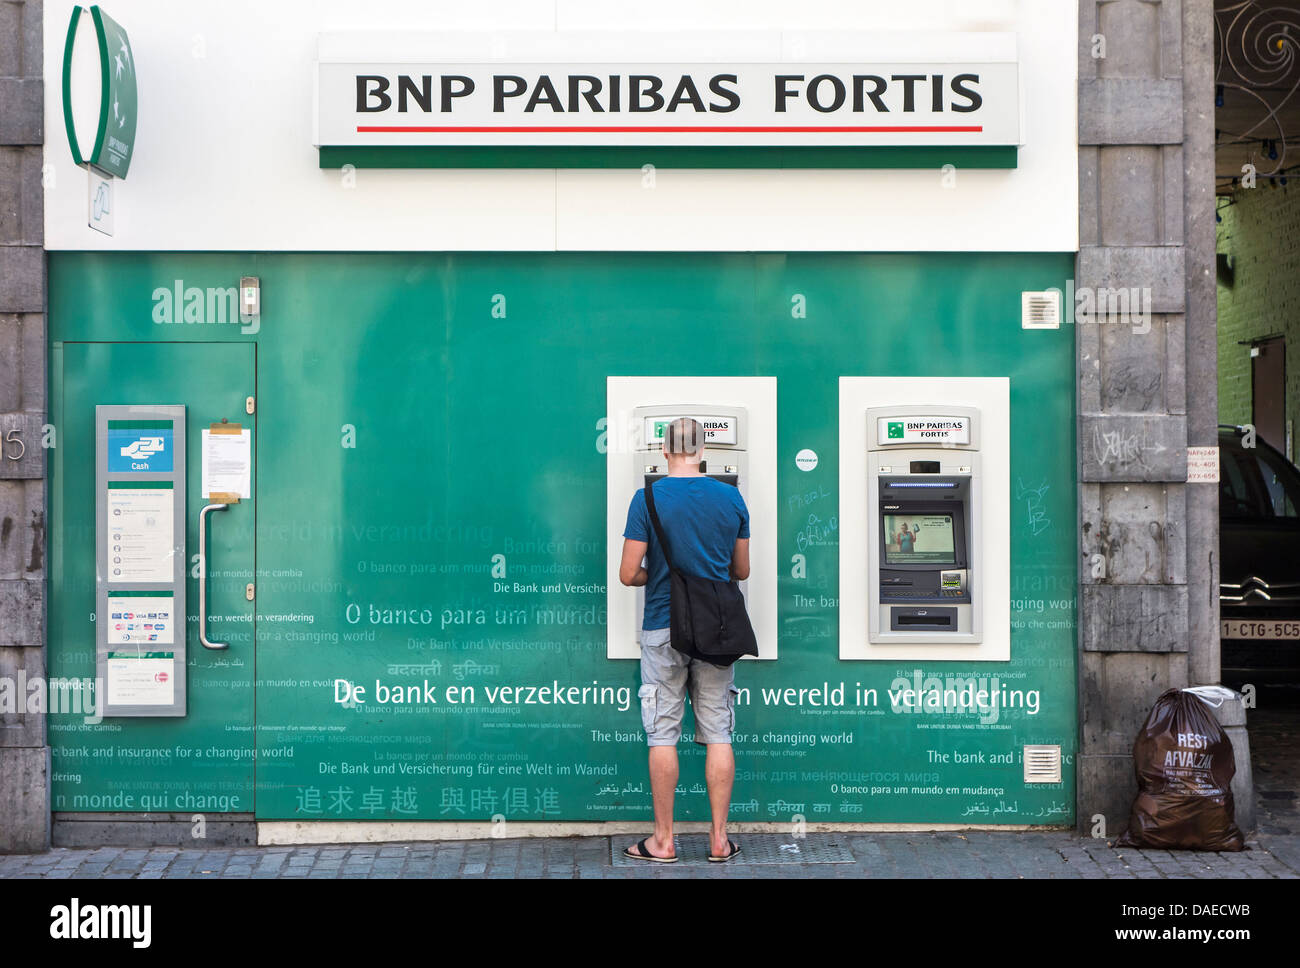 Hombre recogiendo dinero en el cajero automático de la BNP Paribas Fortis Bank, Bélgica Foto de stock